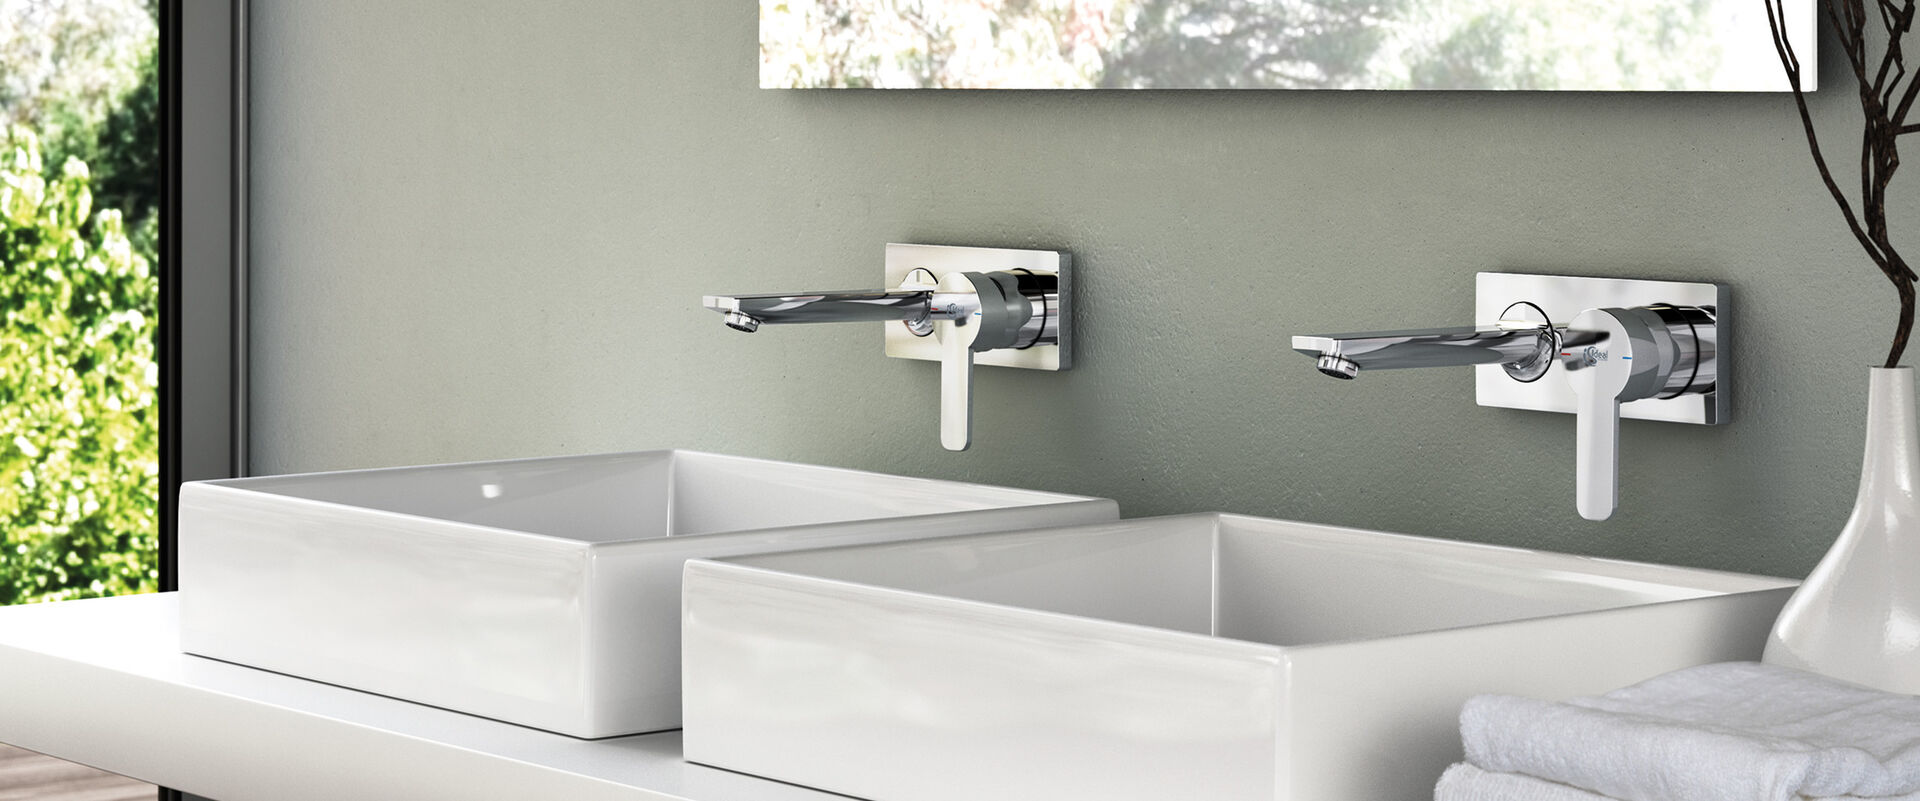 Waschtisch mit freistehenden Waschbecken, über denen 2 GIO Ideal Standard Wasserhähne installiert sind. Die Wand ist grün-grau gestrichen.